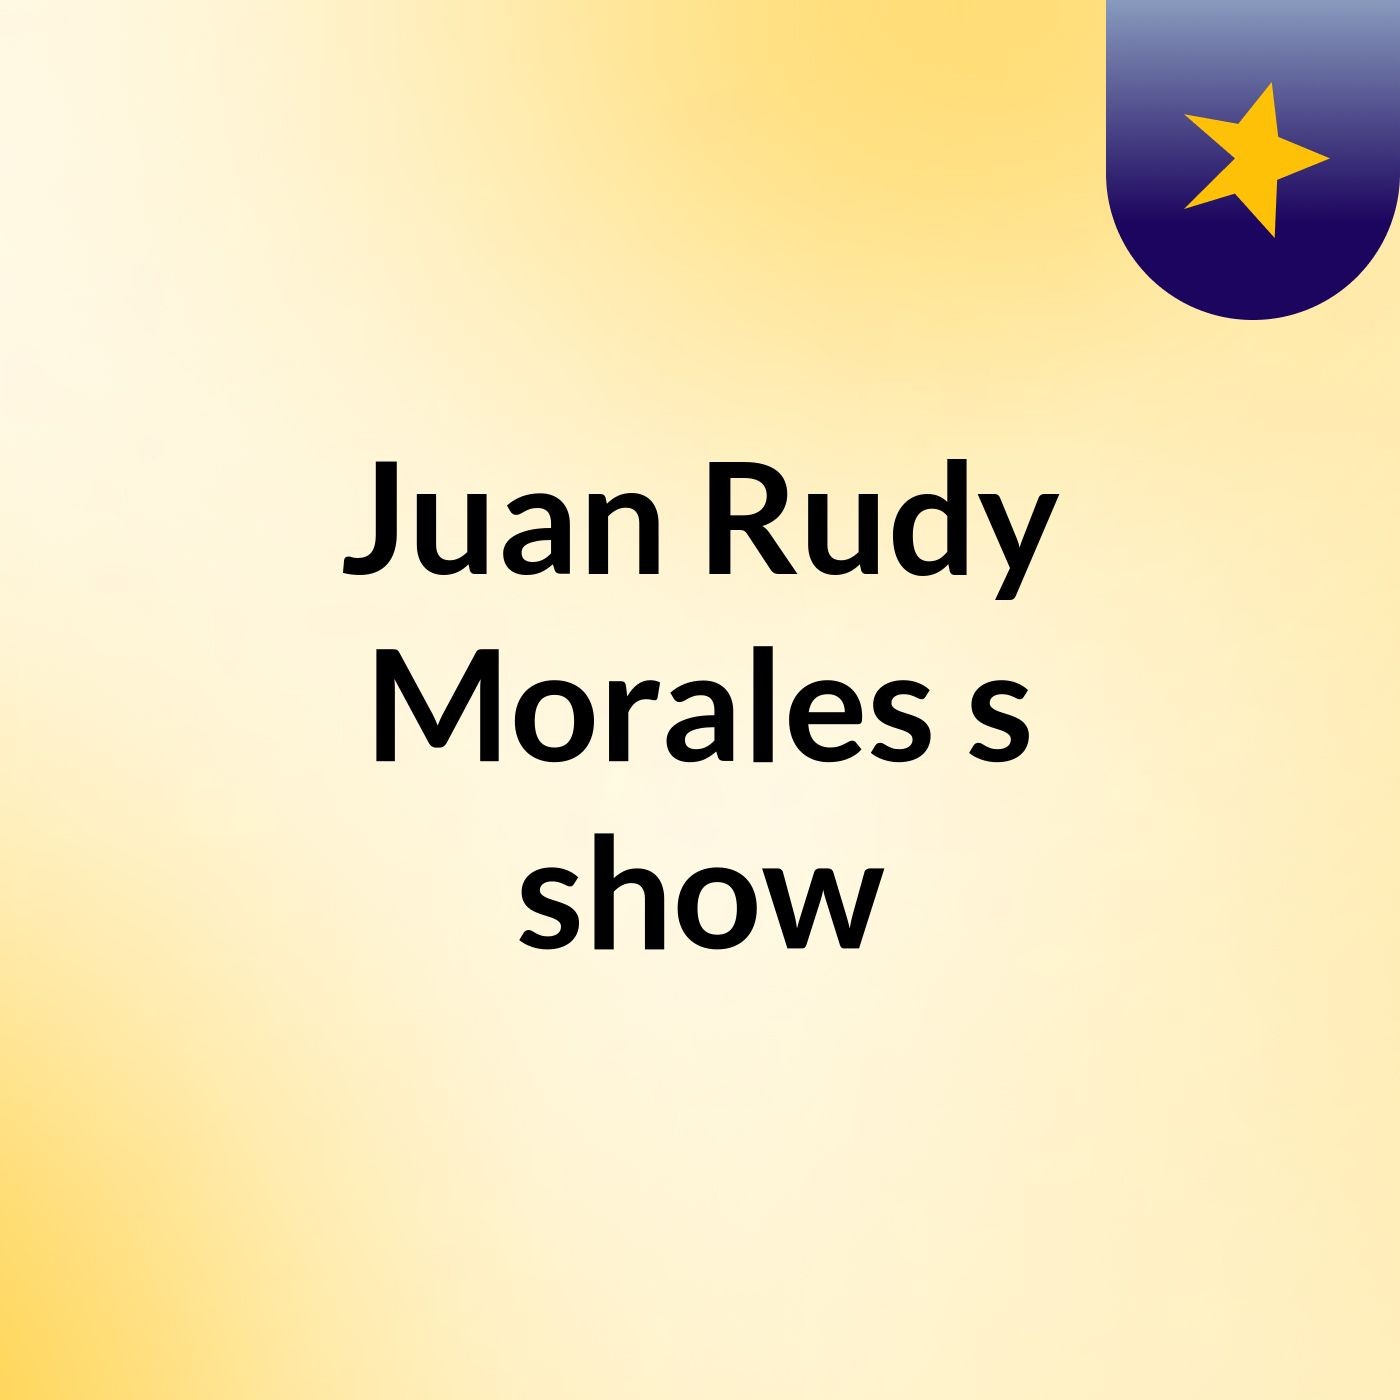 Juan Rudy Morales's show